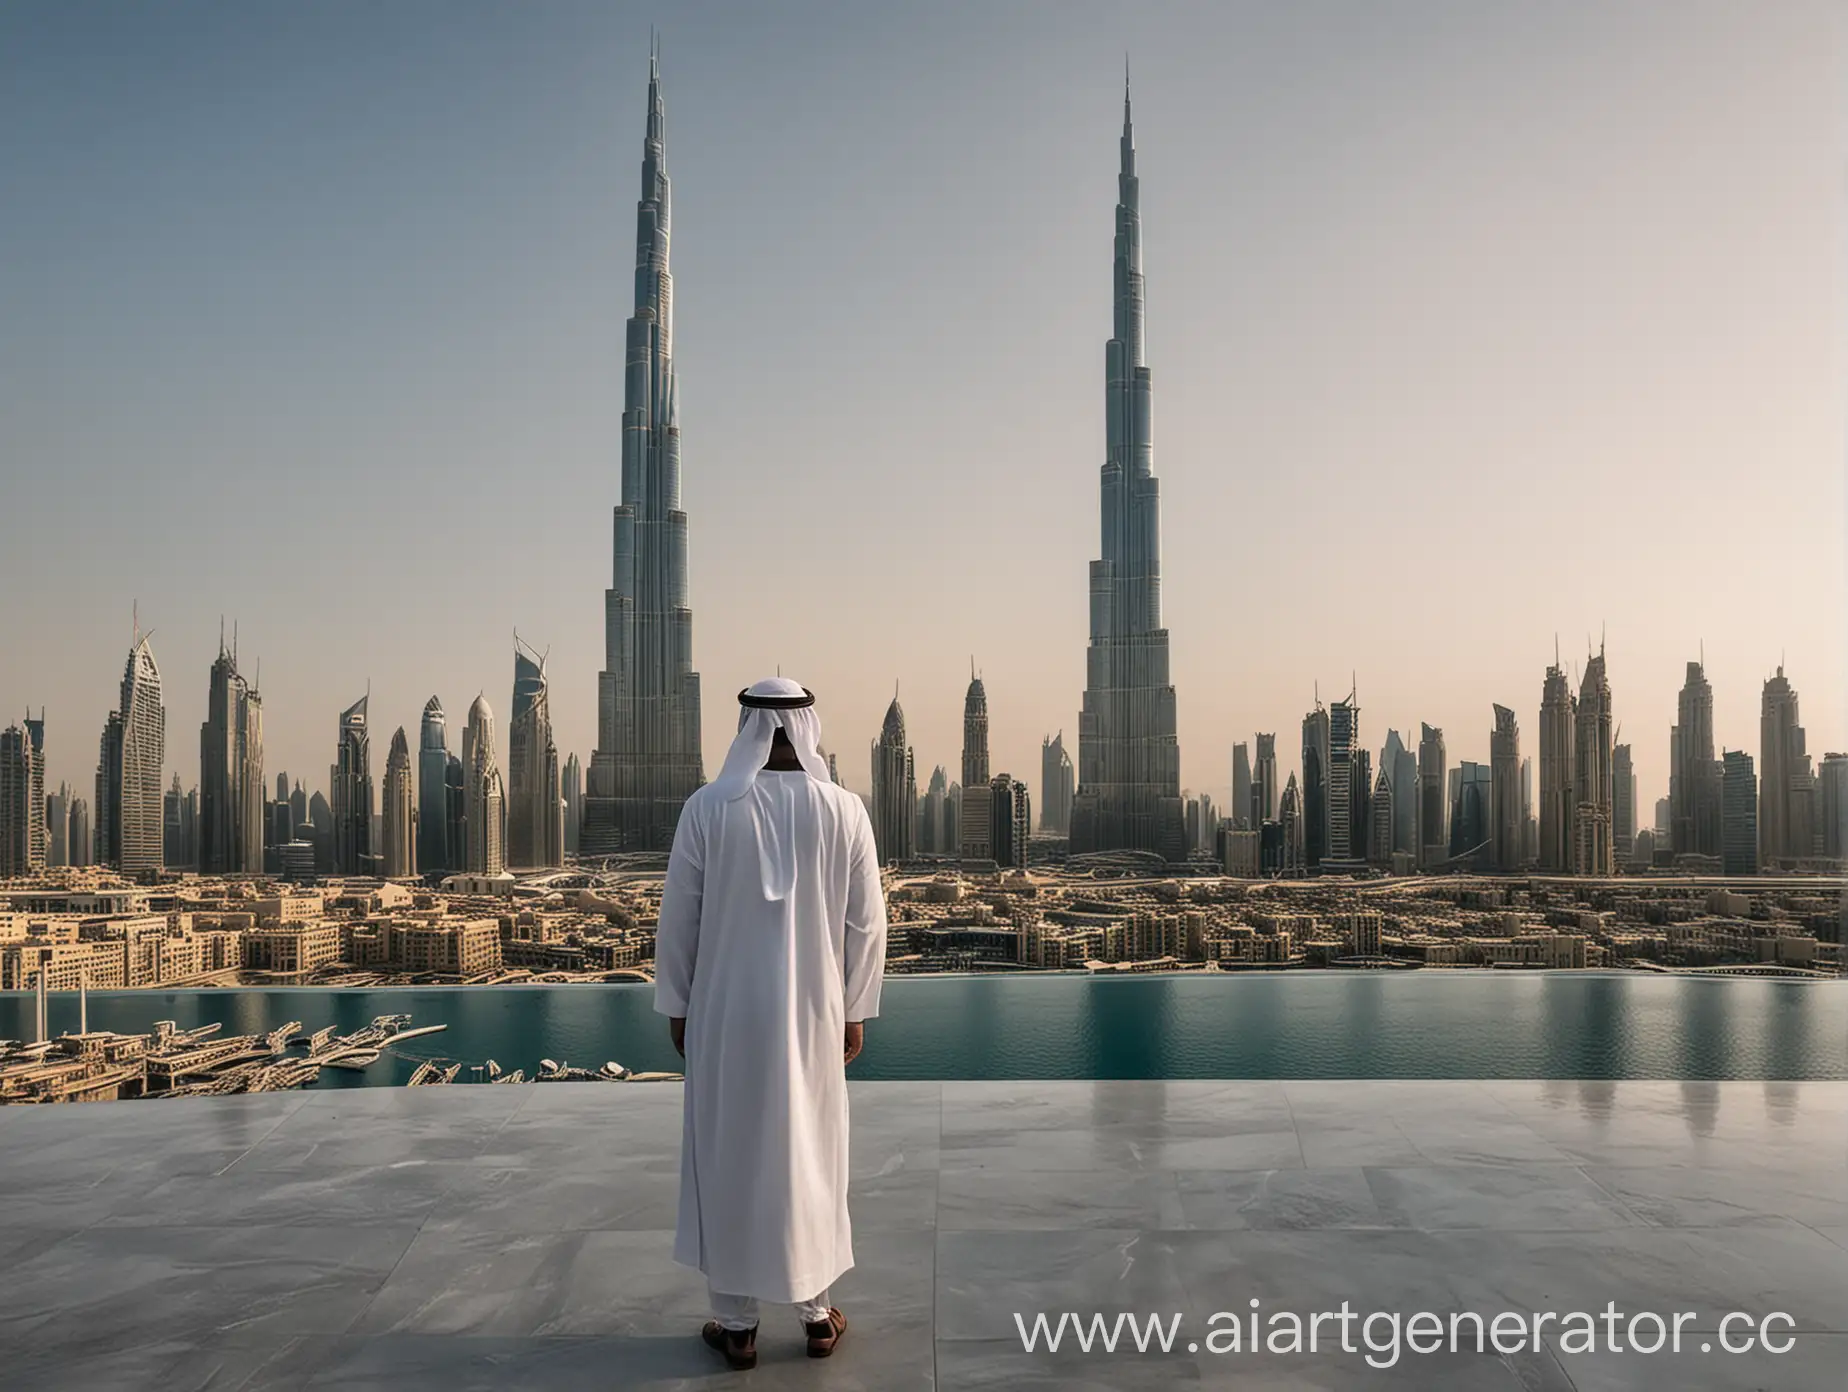 Шейх повернутый спиной на фоне Burj Khalifa